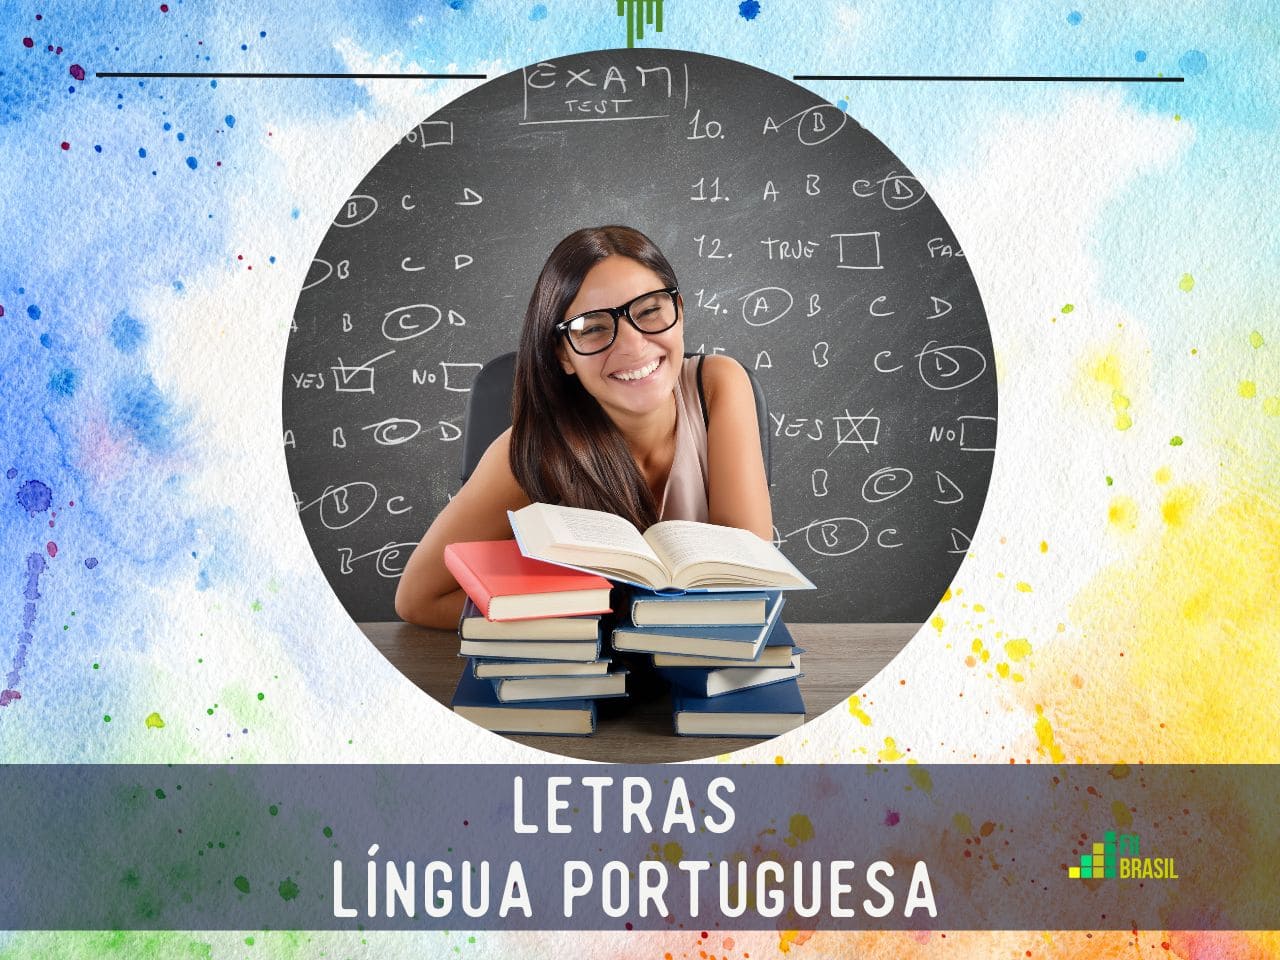 Letras - Língua Portuguesa notas de corte